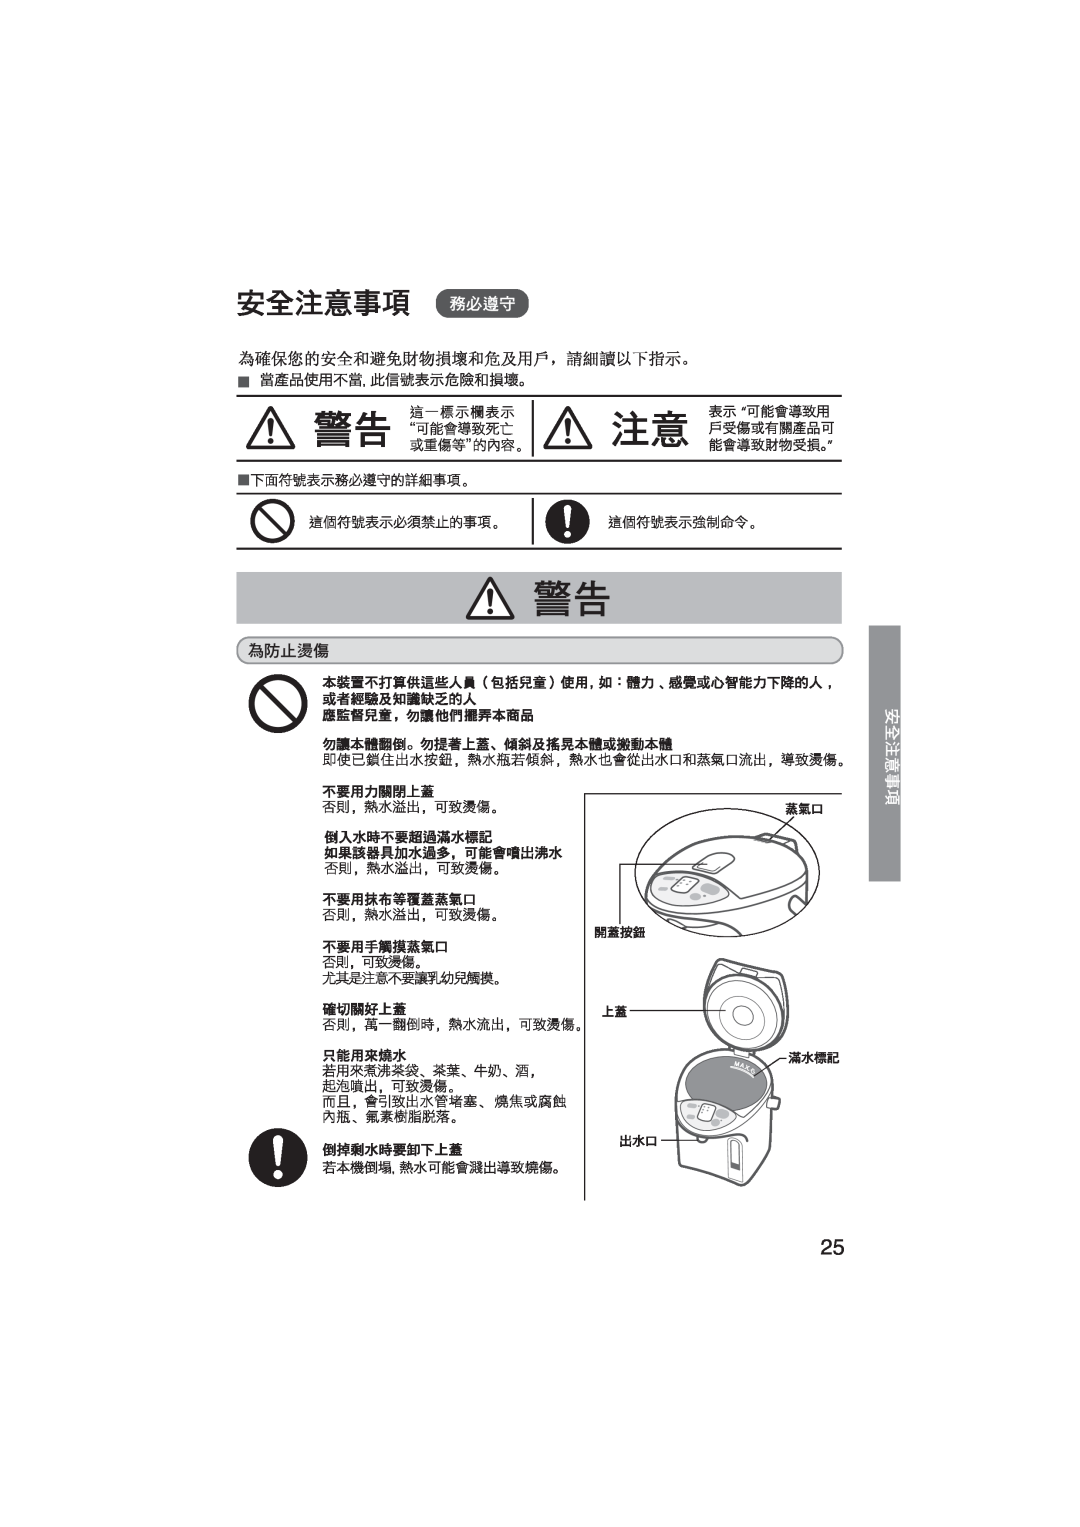 Panasonic NC-EH22P, NC-EH30P, NC-EH40P 當產品使用不當，此信號表示危險和損壞。, 表示 可能會導致用 戶受傷或有關產品可 能會導致財物受損。, 若本機倒, ，熱水可能會濺出導致燒傷。 